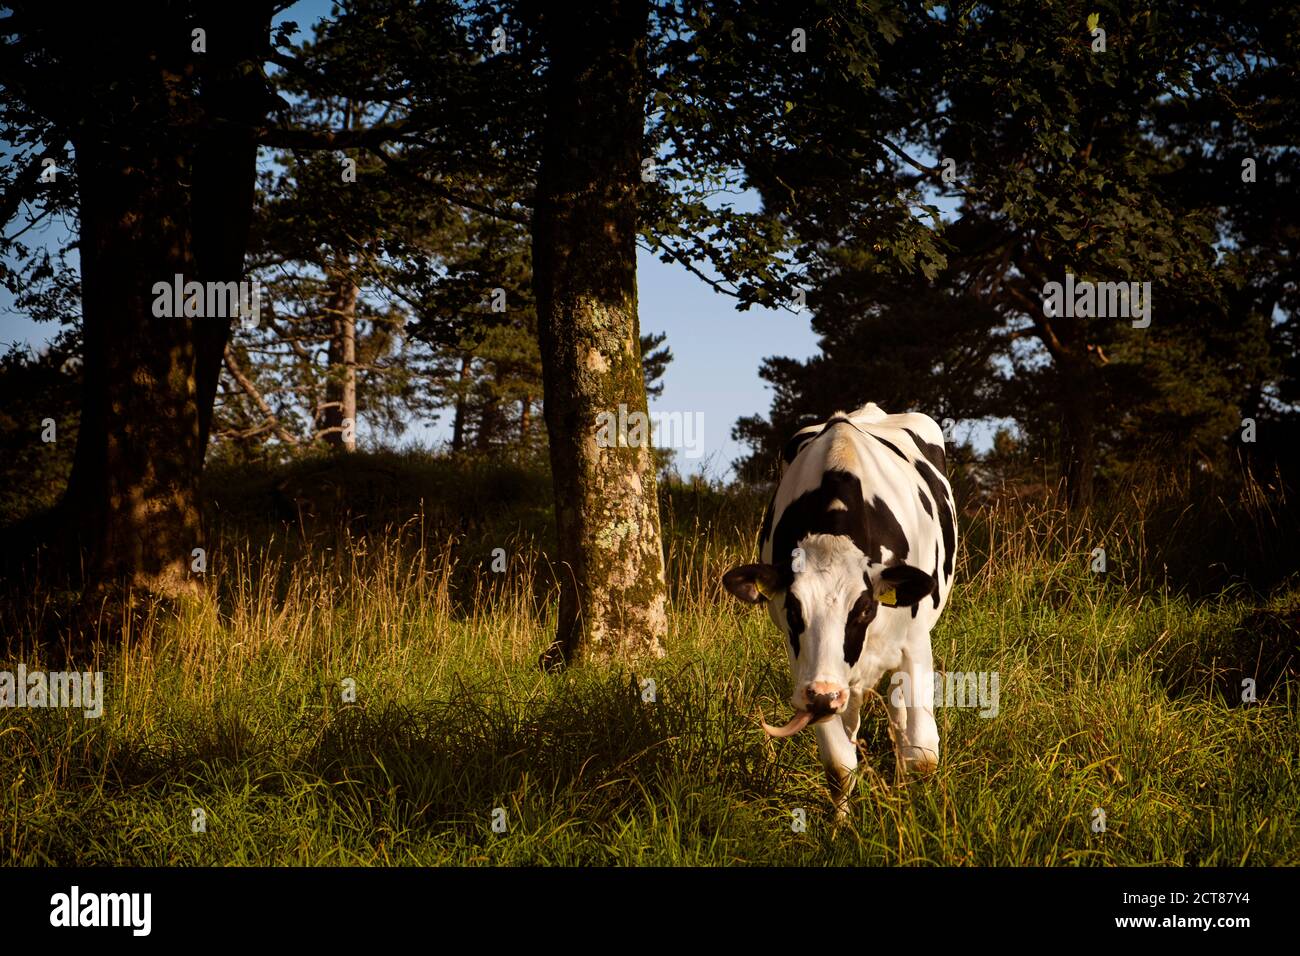 Une vache s'approchant avec sa langue accrochée d'un côté. Banque D'Images